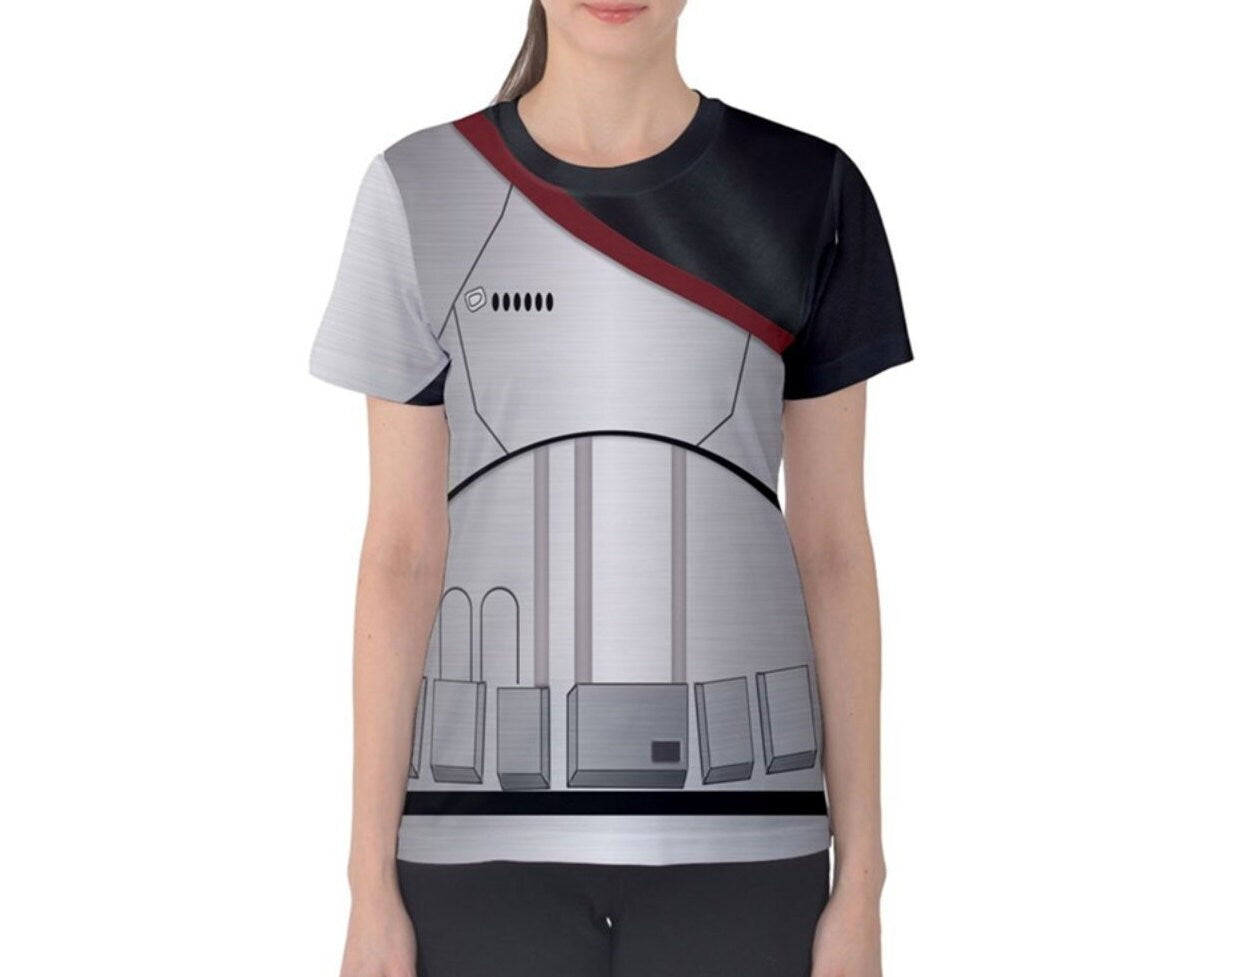 RUSH ORDER: Women's Captain Phasma Star Wars Inspired ATHLETIC Shirt